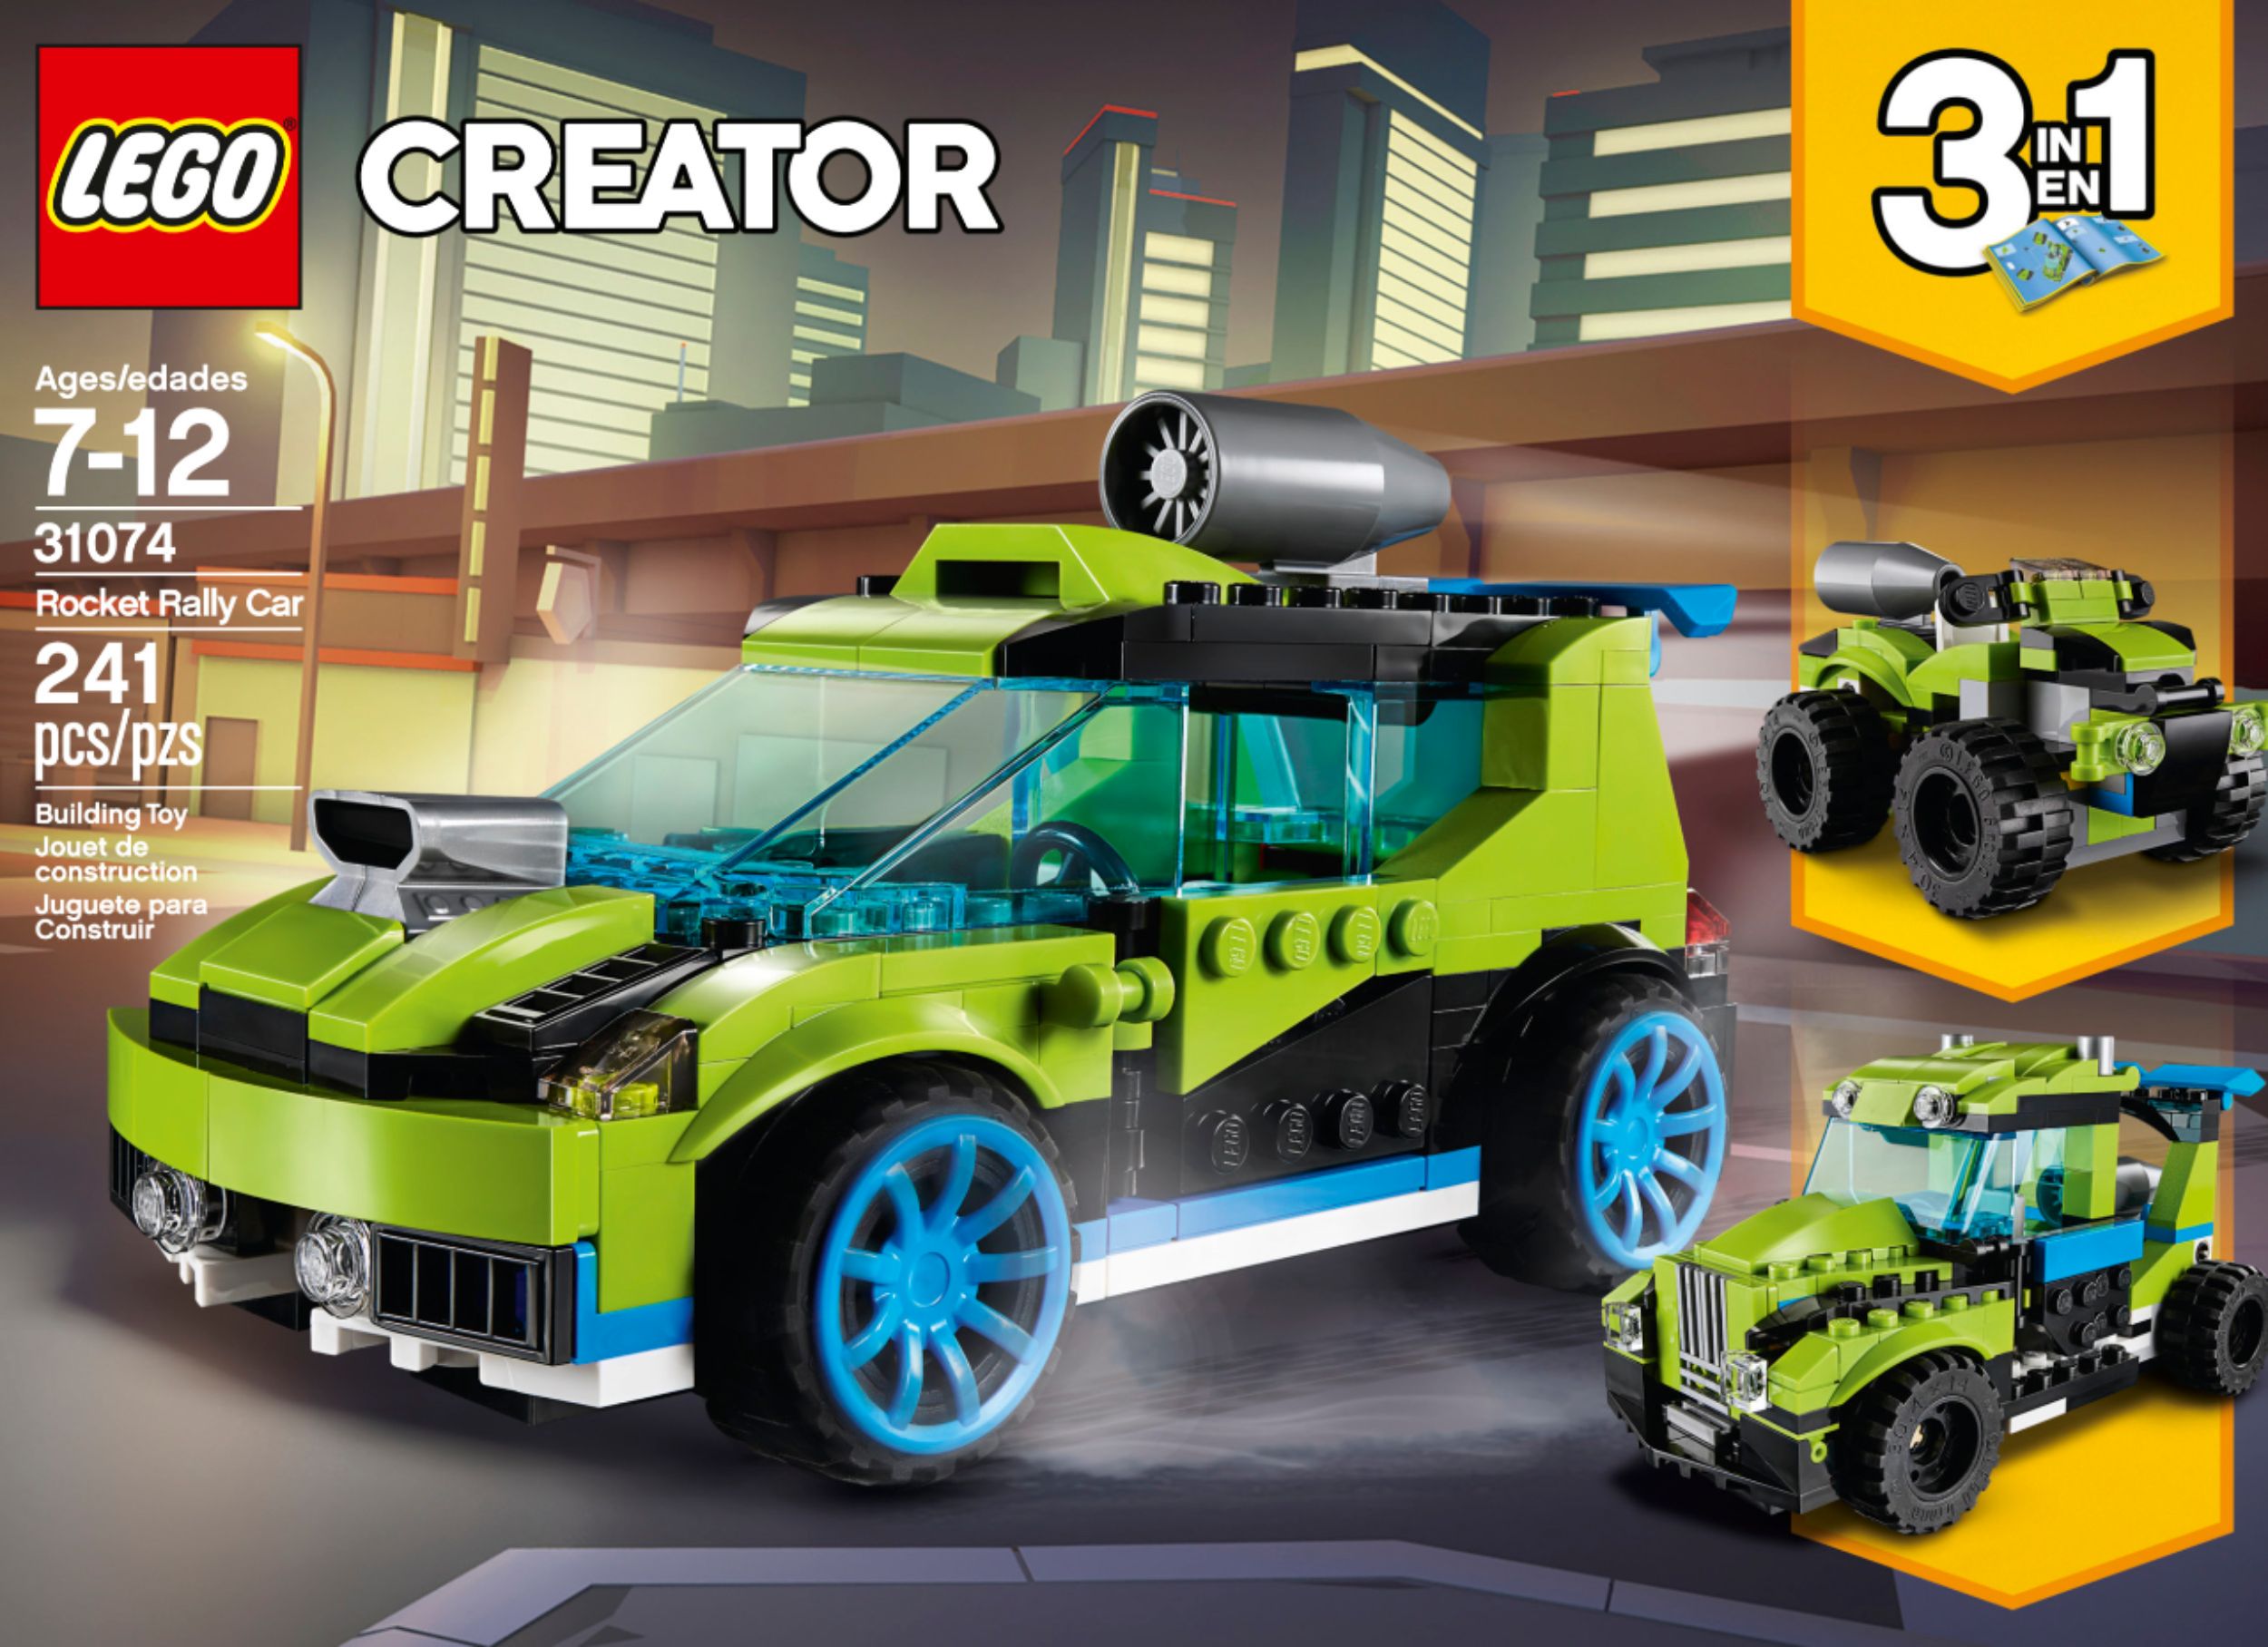 Sømand endelse Forkæle Best Buy: LEGO Creator 3-in-1: Rocket Rally Car 31074 6213399